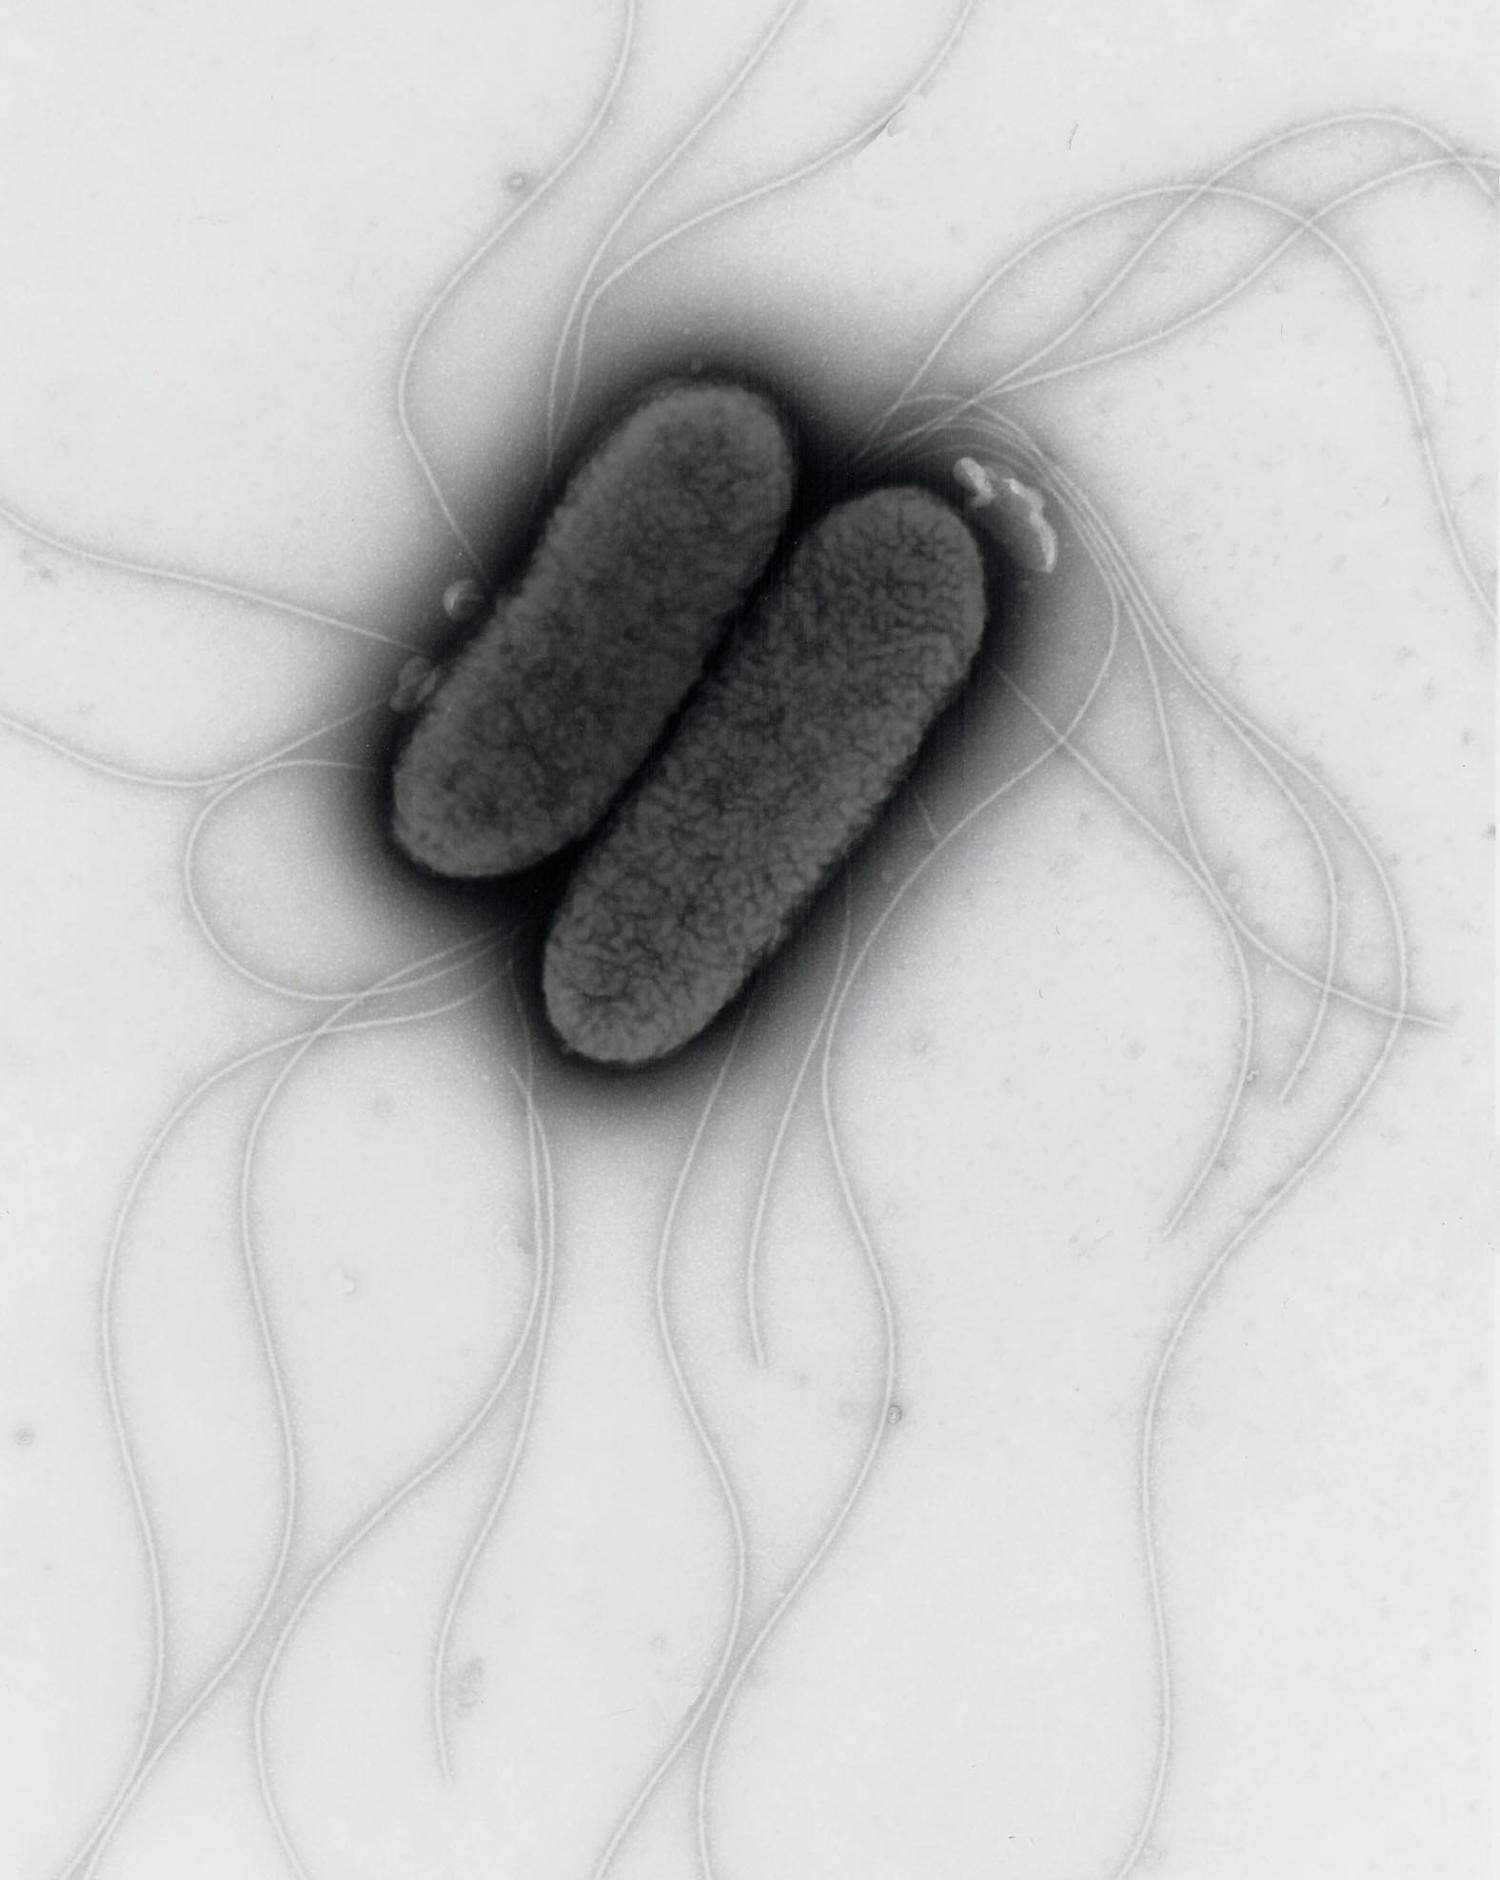 Сальмонеллез бактерия. Бактерия сальмонелла Тифи. Сальмонелла тифимуриум. Сальмонелла — бацилла.